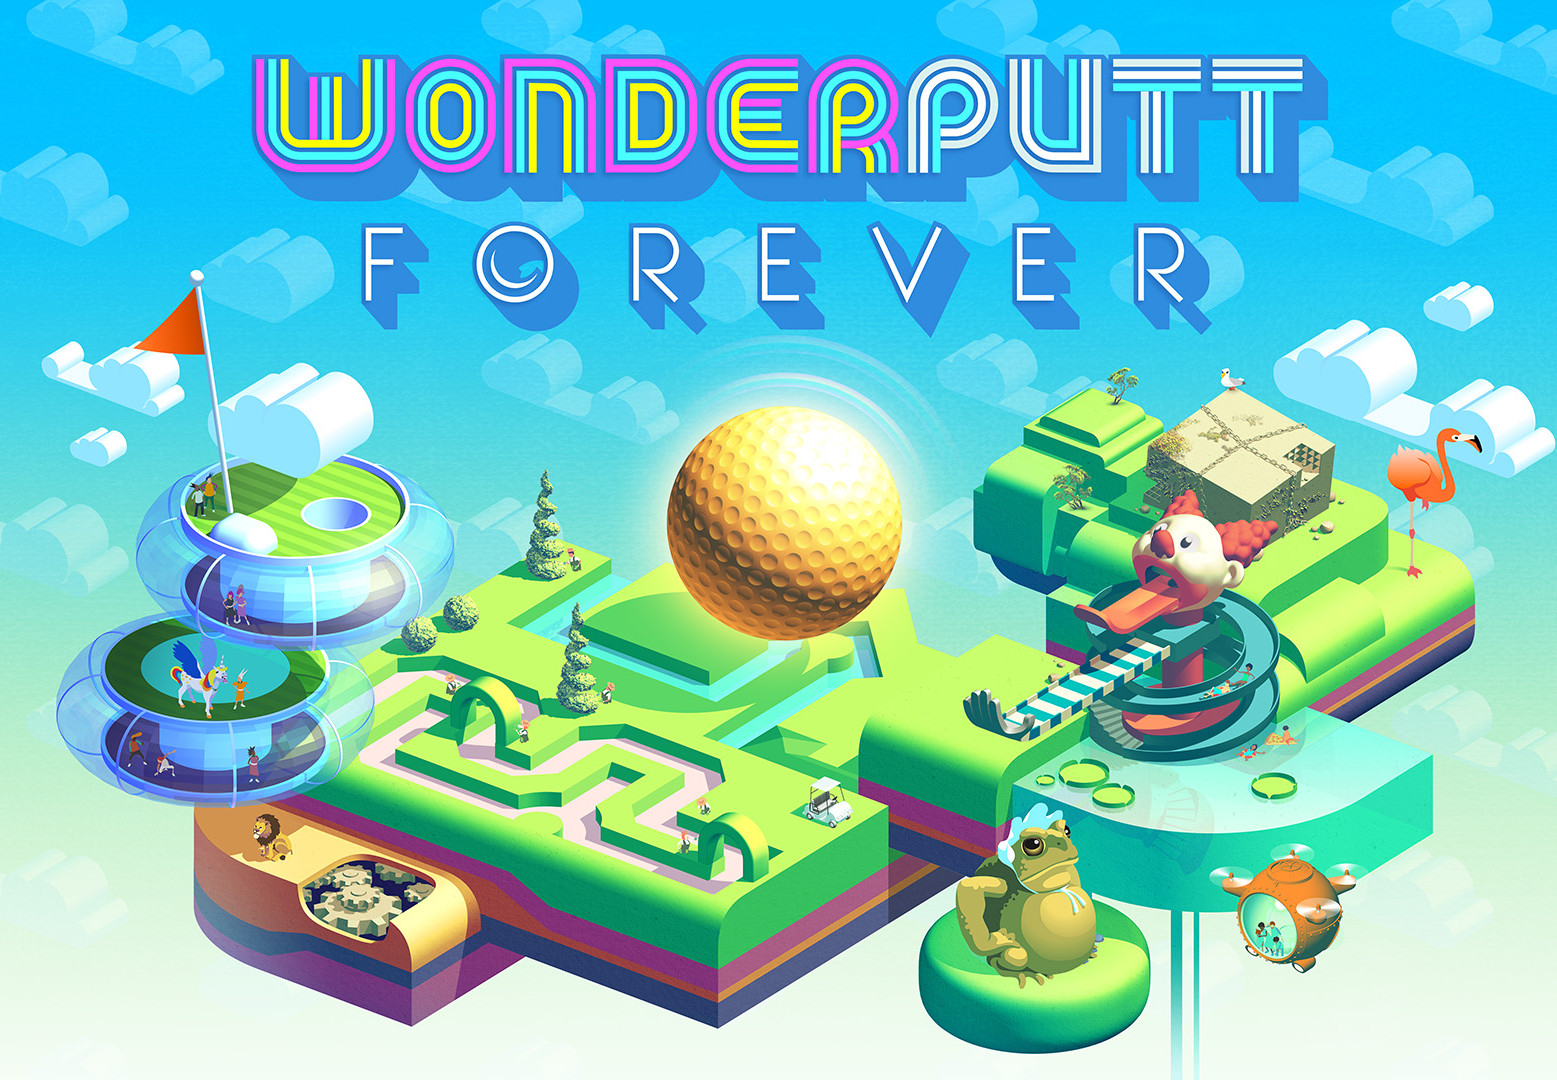 Wonderputt Forever Steam CD Key